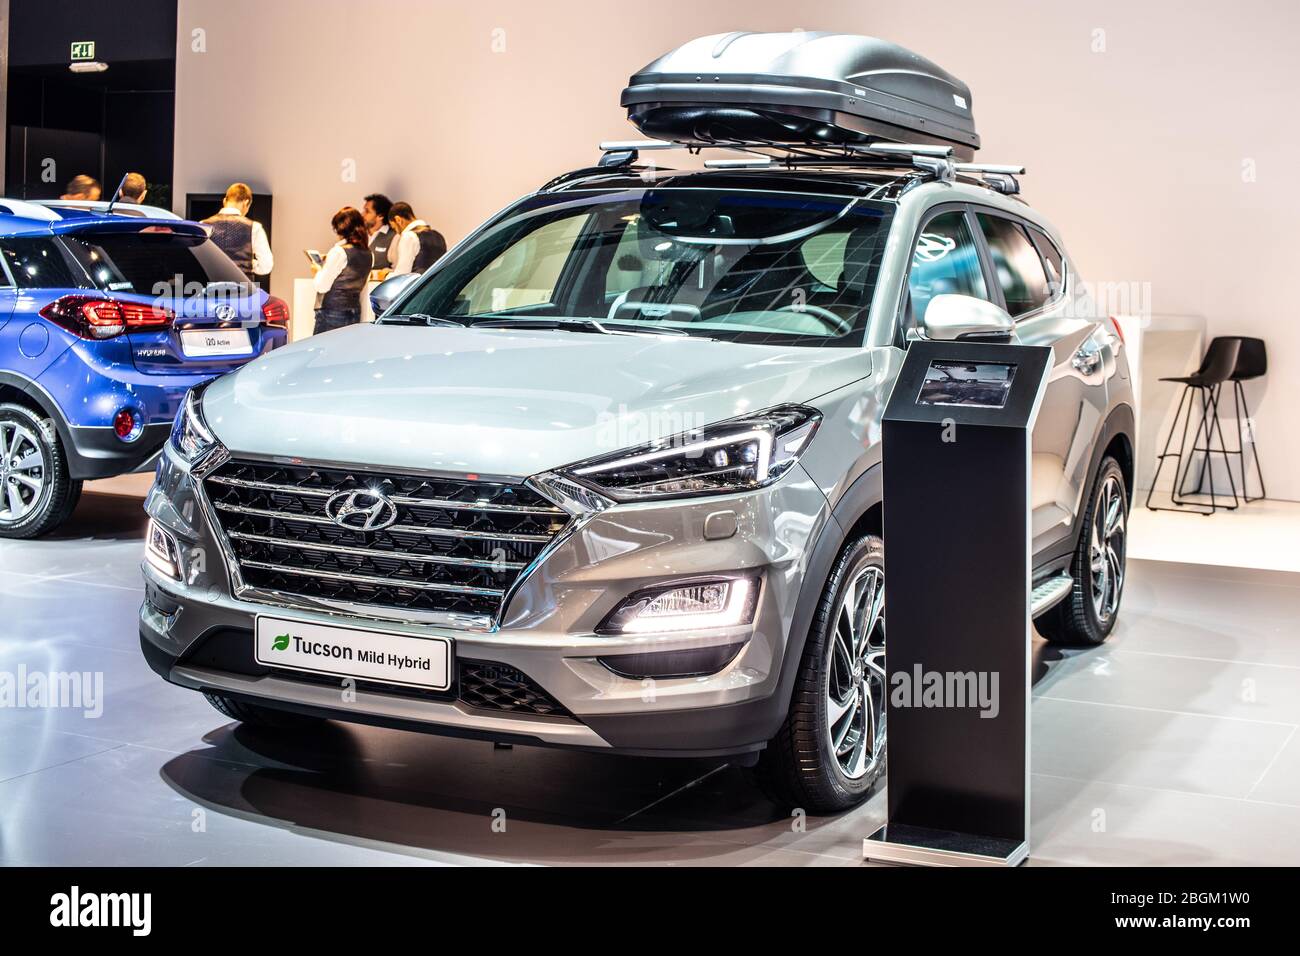 Hyundai tucson mild hybrid hi-res stock photography and images - Alamy